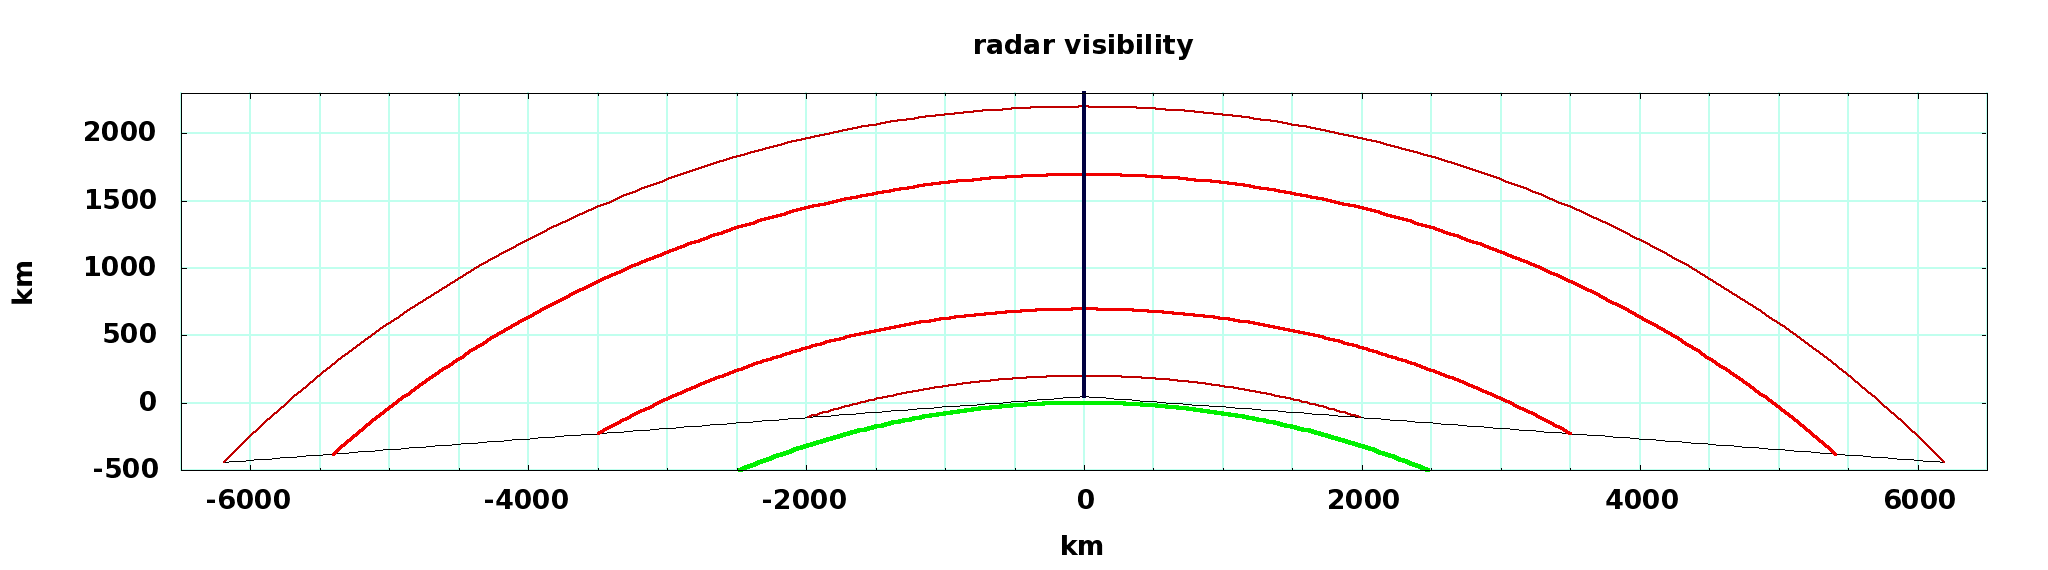 radar viewing angle